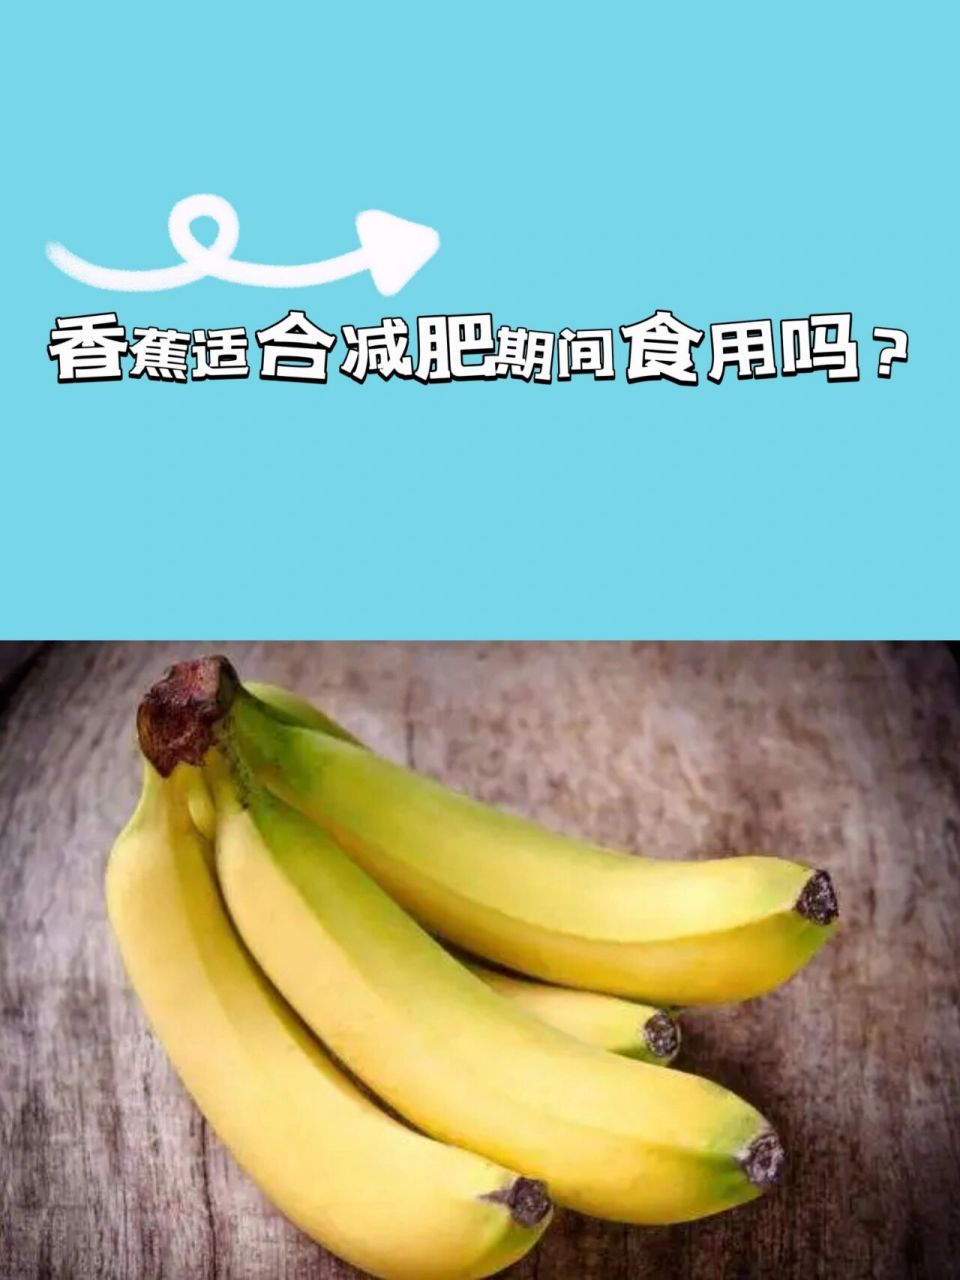 香蕉适合减肥期间食用吗71 许多人以为香蕉热量高太甜,其实香蕉的gi